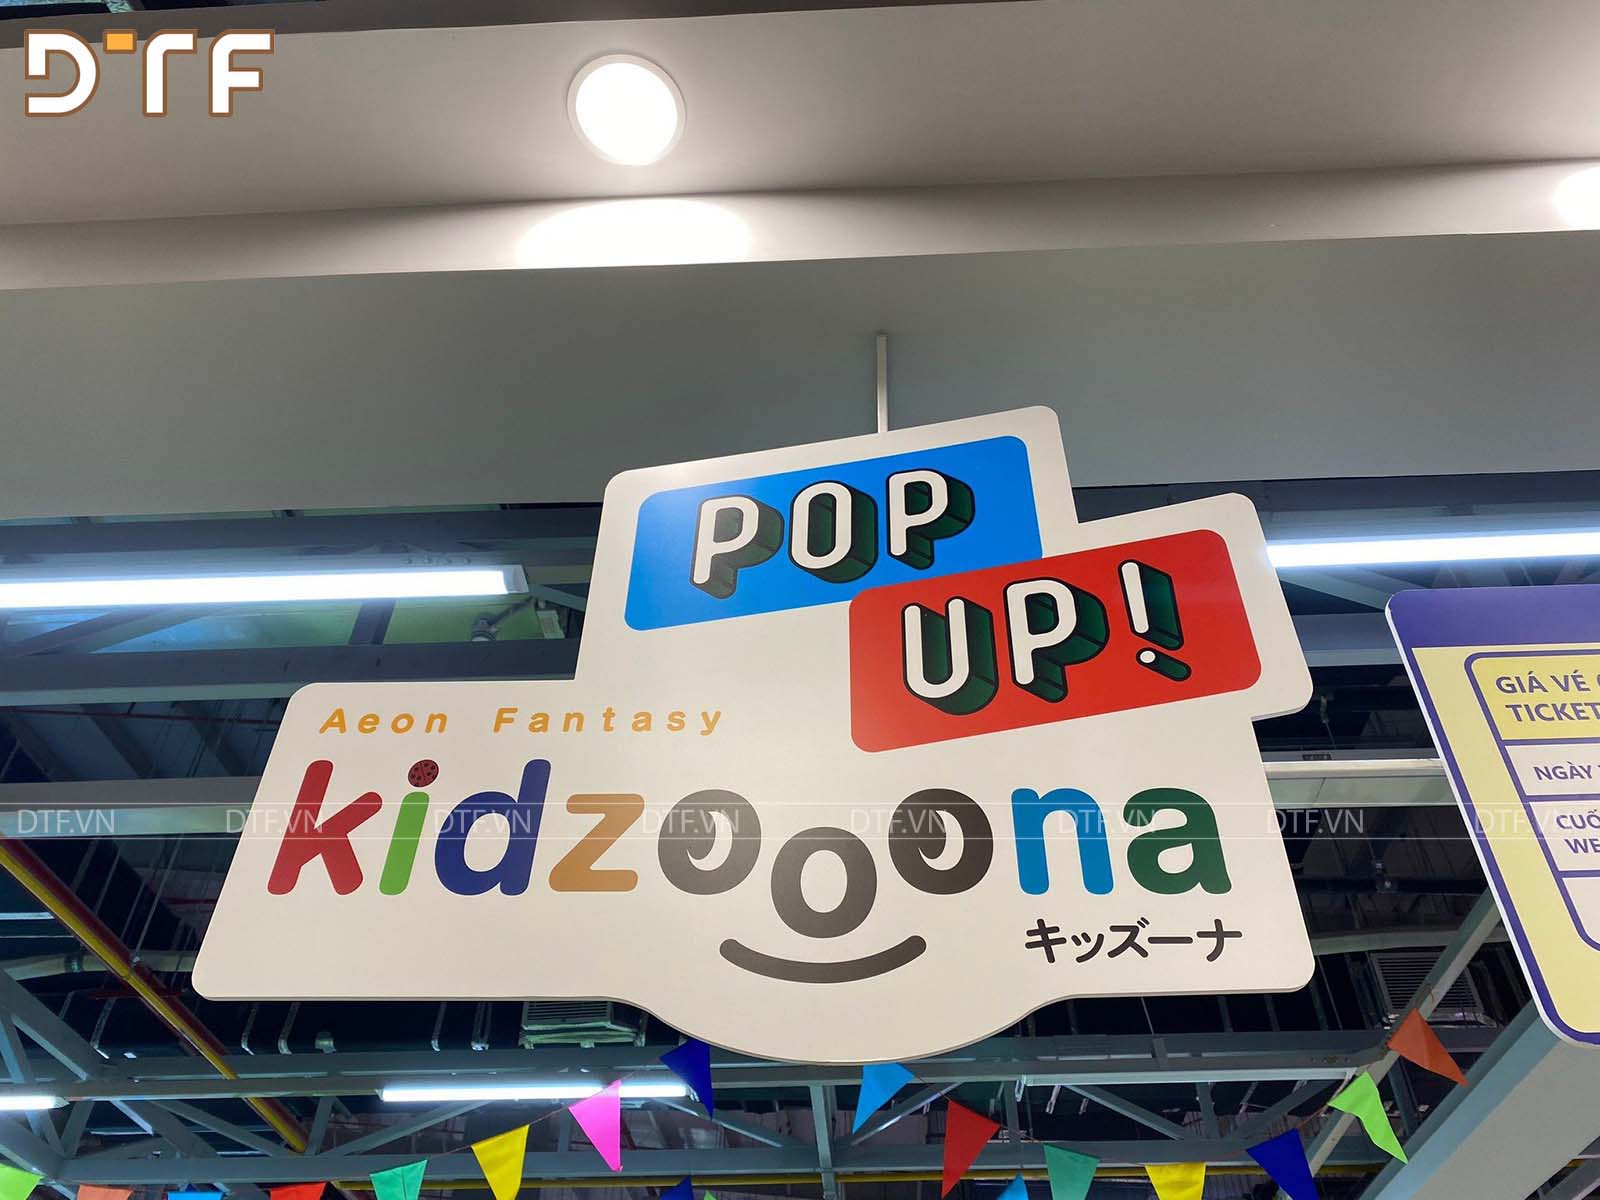 Thi công khu vui chơi trẻ em Popup kidzooona tại Lotte Mart Vinh